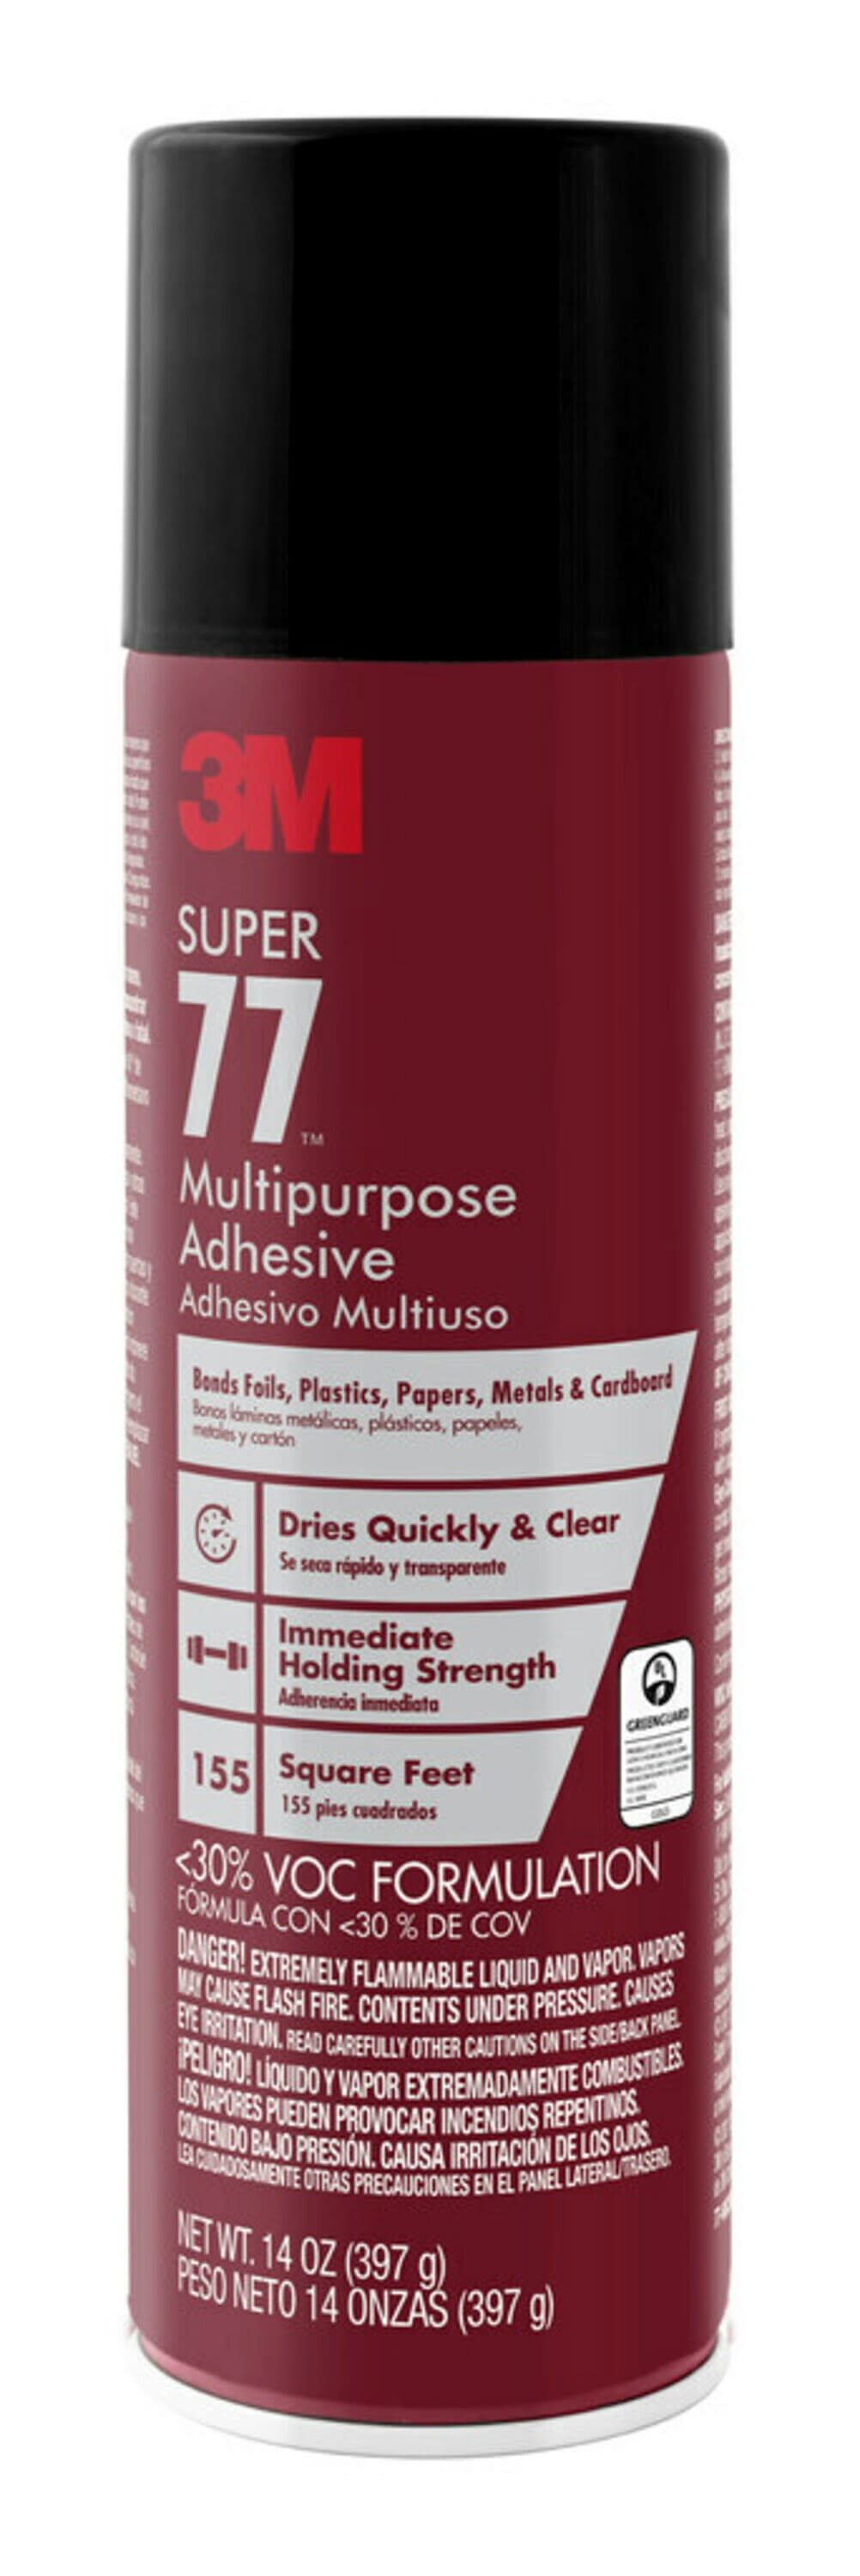 3m super 77 multipurpose spray adhesive